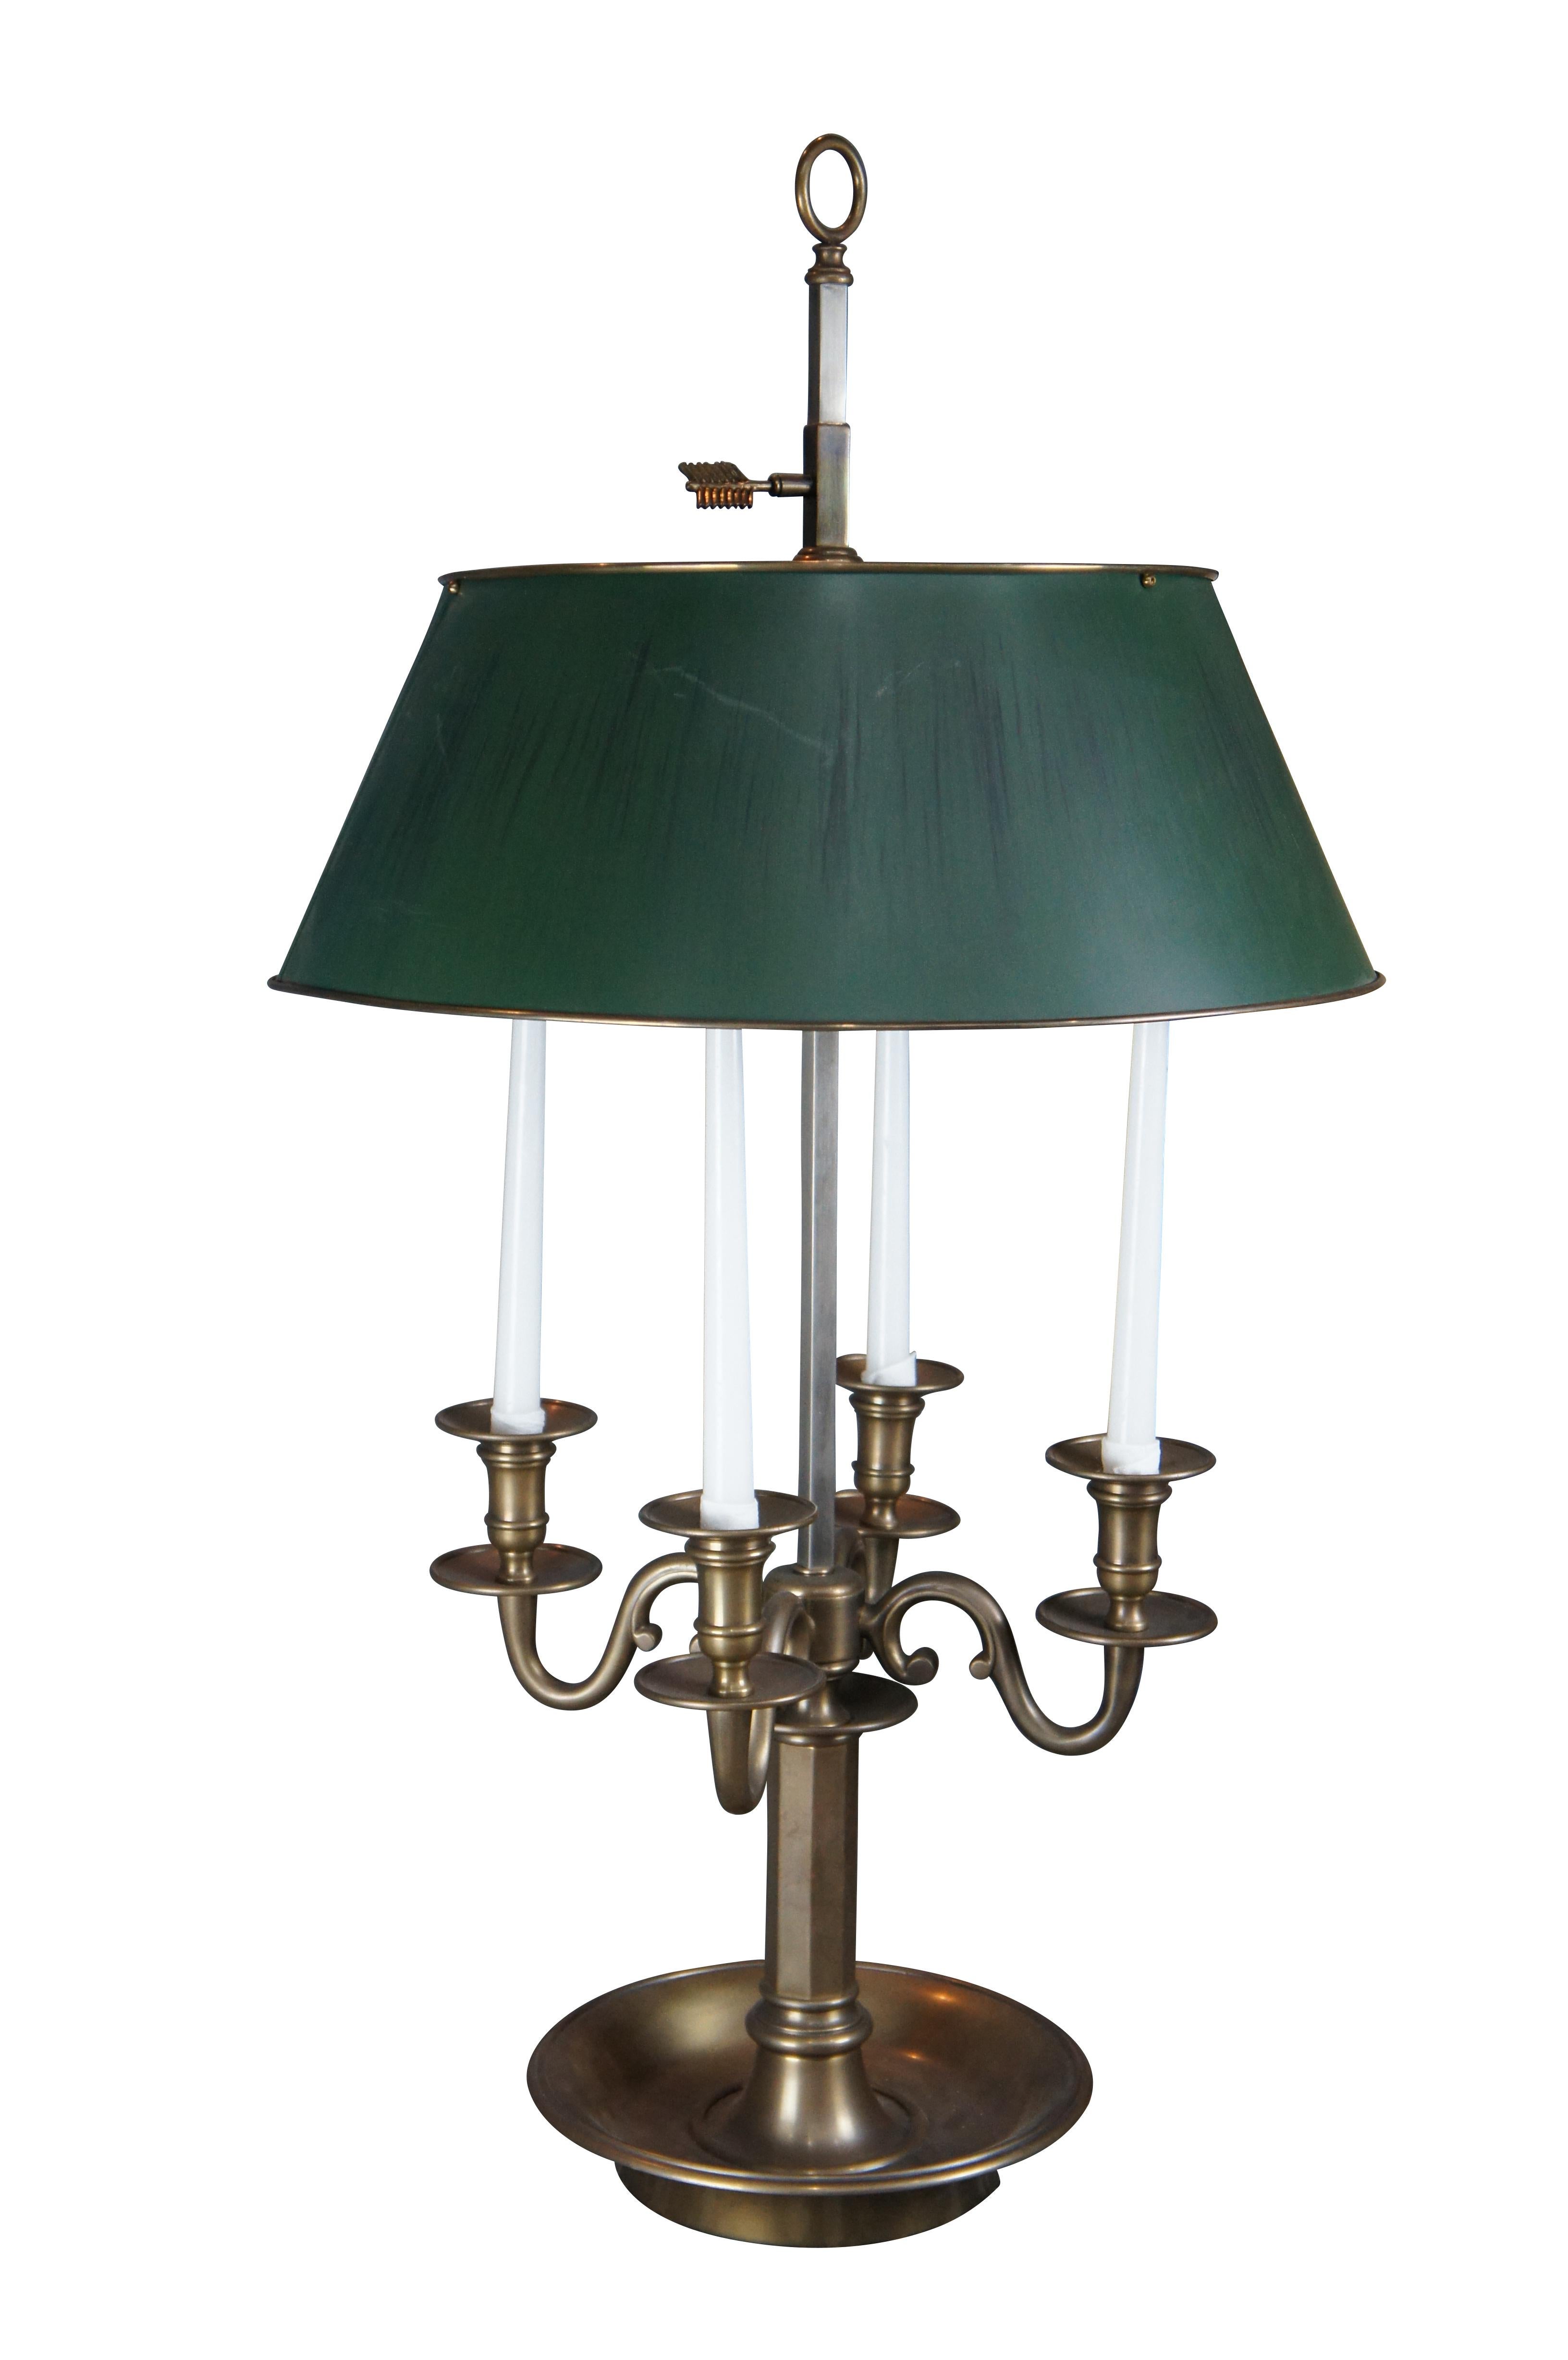 Große und beeindruckende französisch inspirierte Bouillotte-Lampe von Visual Comfort aus dem späten 20. Vierarmiger Kandelaber mit sechseckiger Halterung und runder Basis. Die Leuchte besteht aus einer quadratischen Säule mit einem verstellbaren